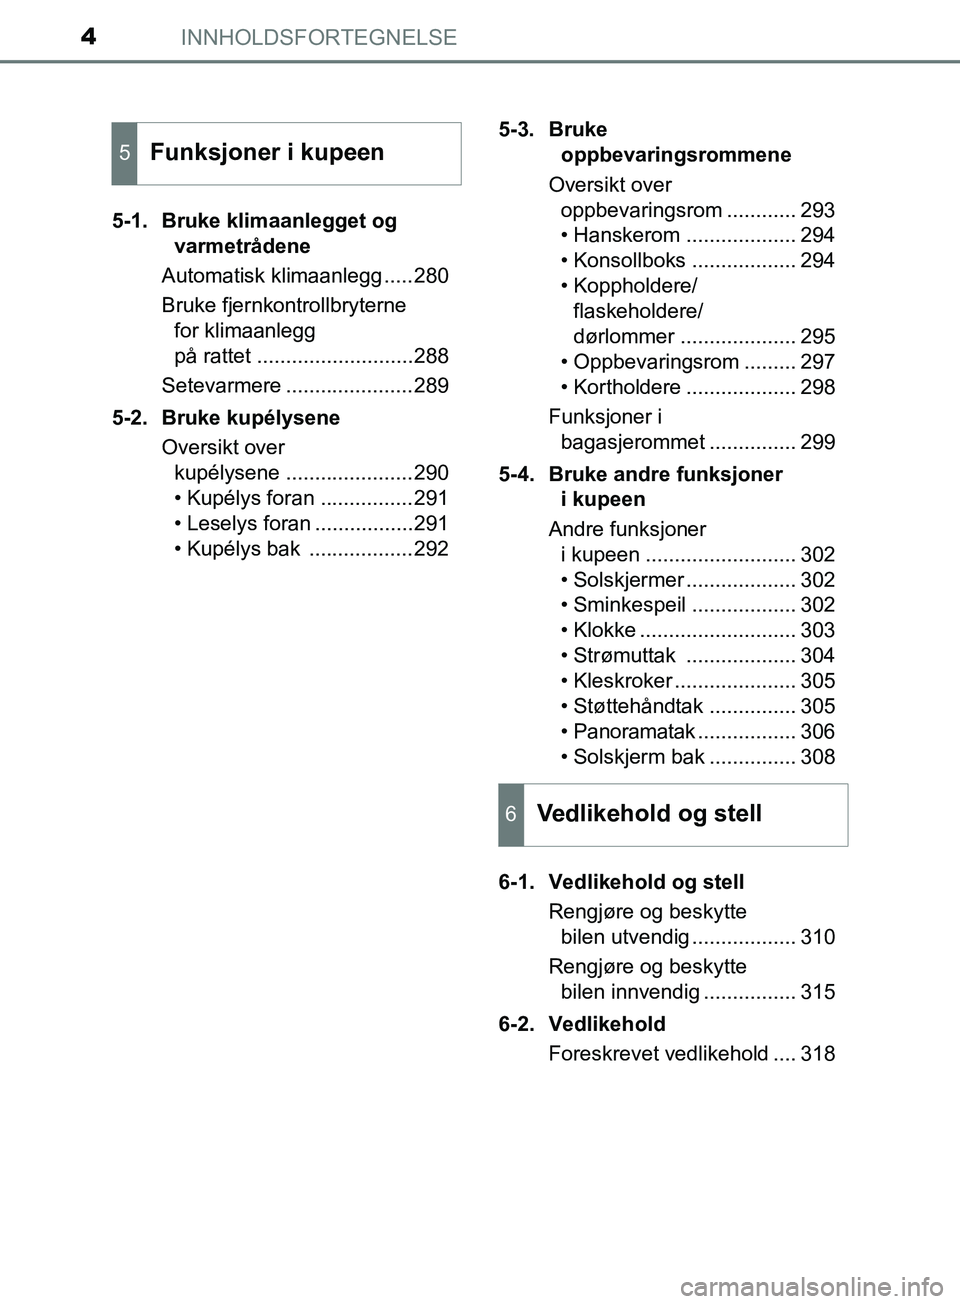 TOYOTA PRIUS PLUS 2019  Instruksjoner for bruk (in Norwegian) INNHOLDSFORTEGNELSE4
OM47D30NO5-1. Bruke klimaanlegget og 
varmetrådene
Automatisk klimaanlegg .....280
Bruke fjernkontrollbryterne  for klimaanlegg 
på rattet ...........................288
Setevar